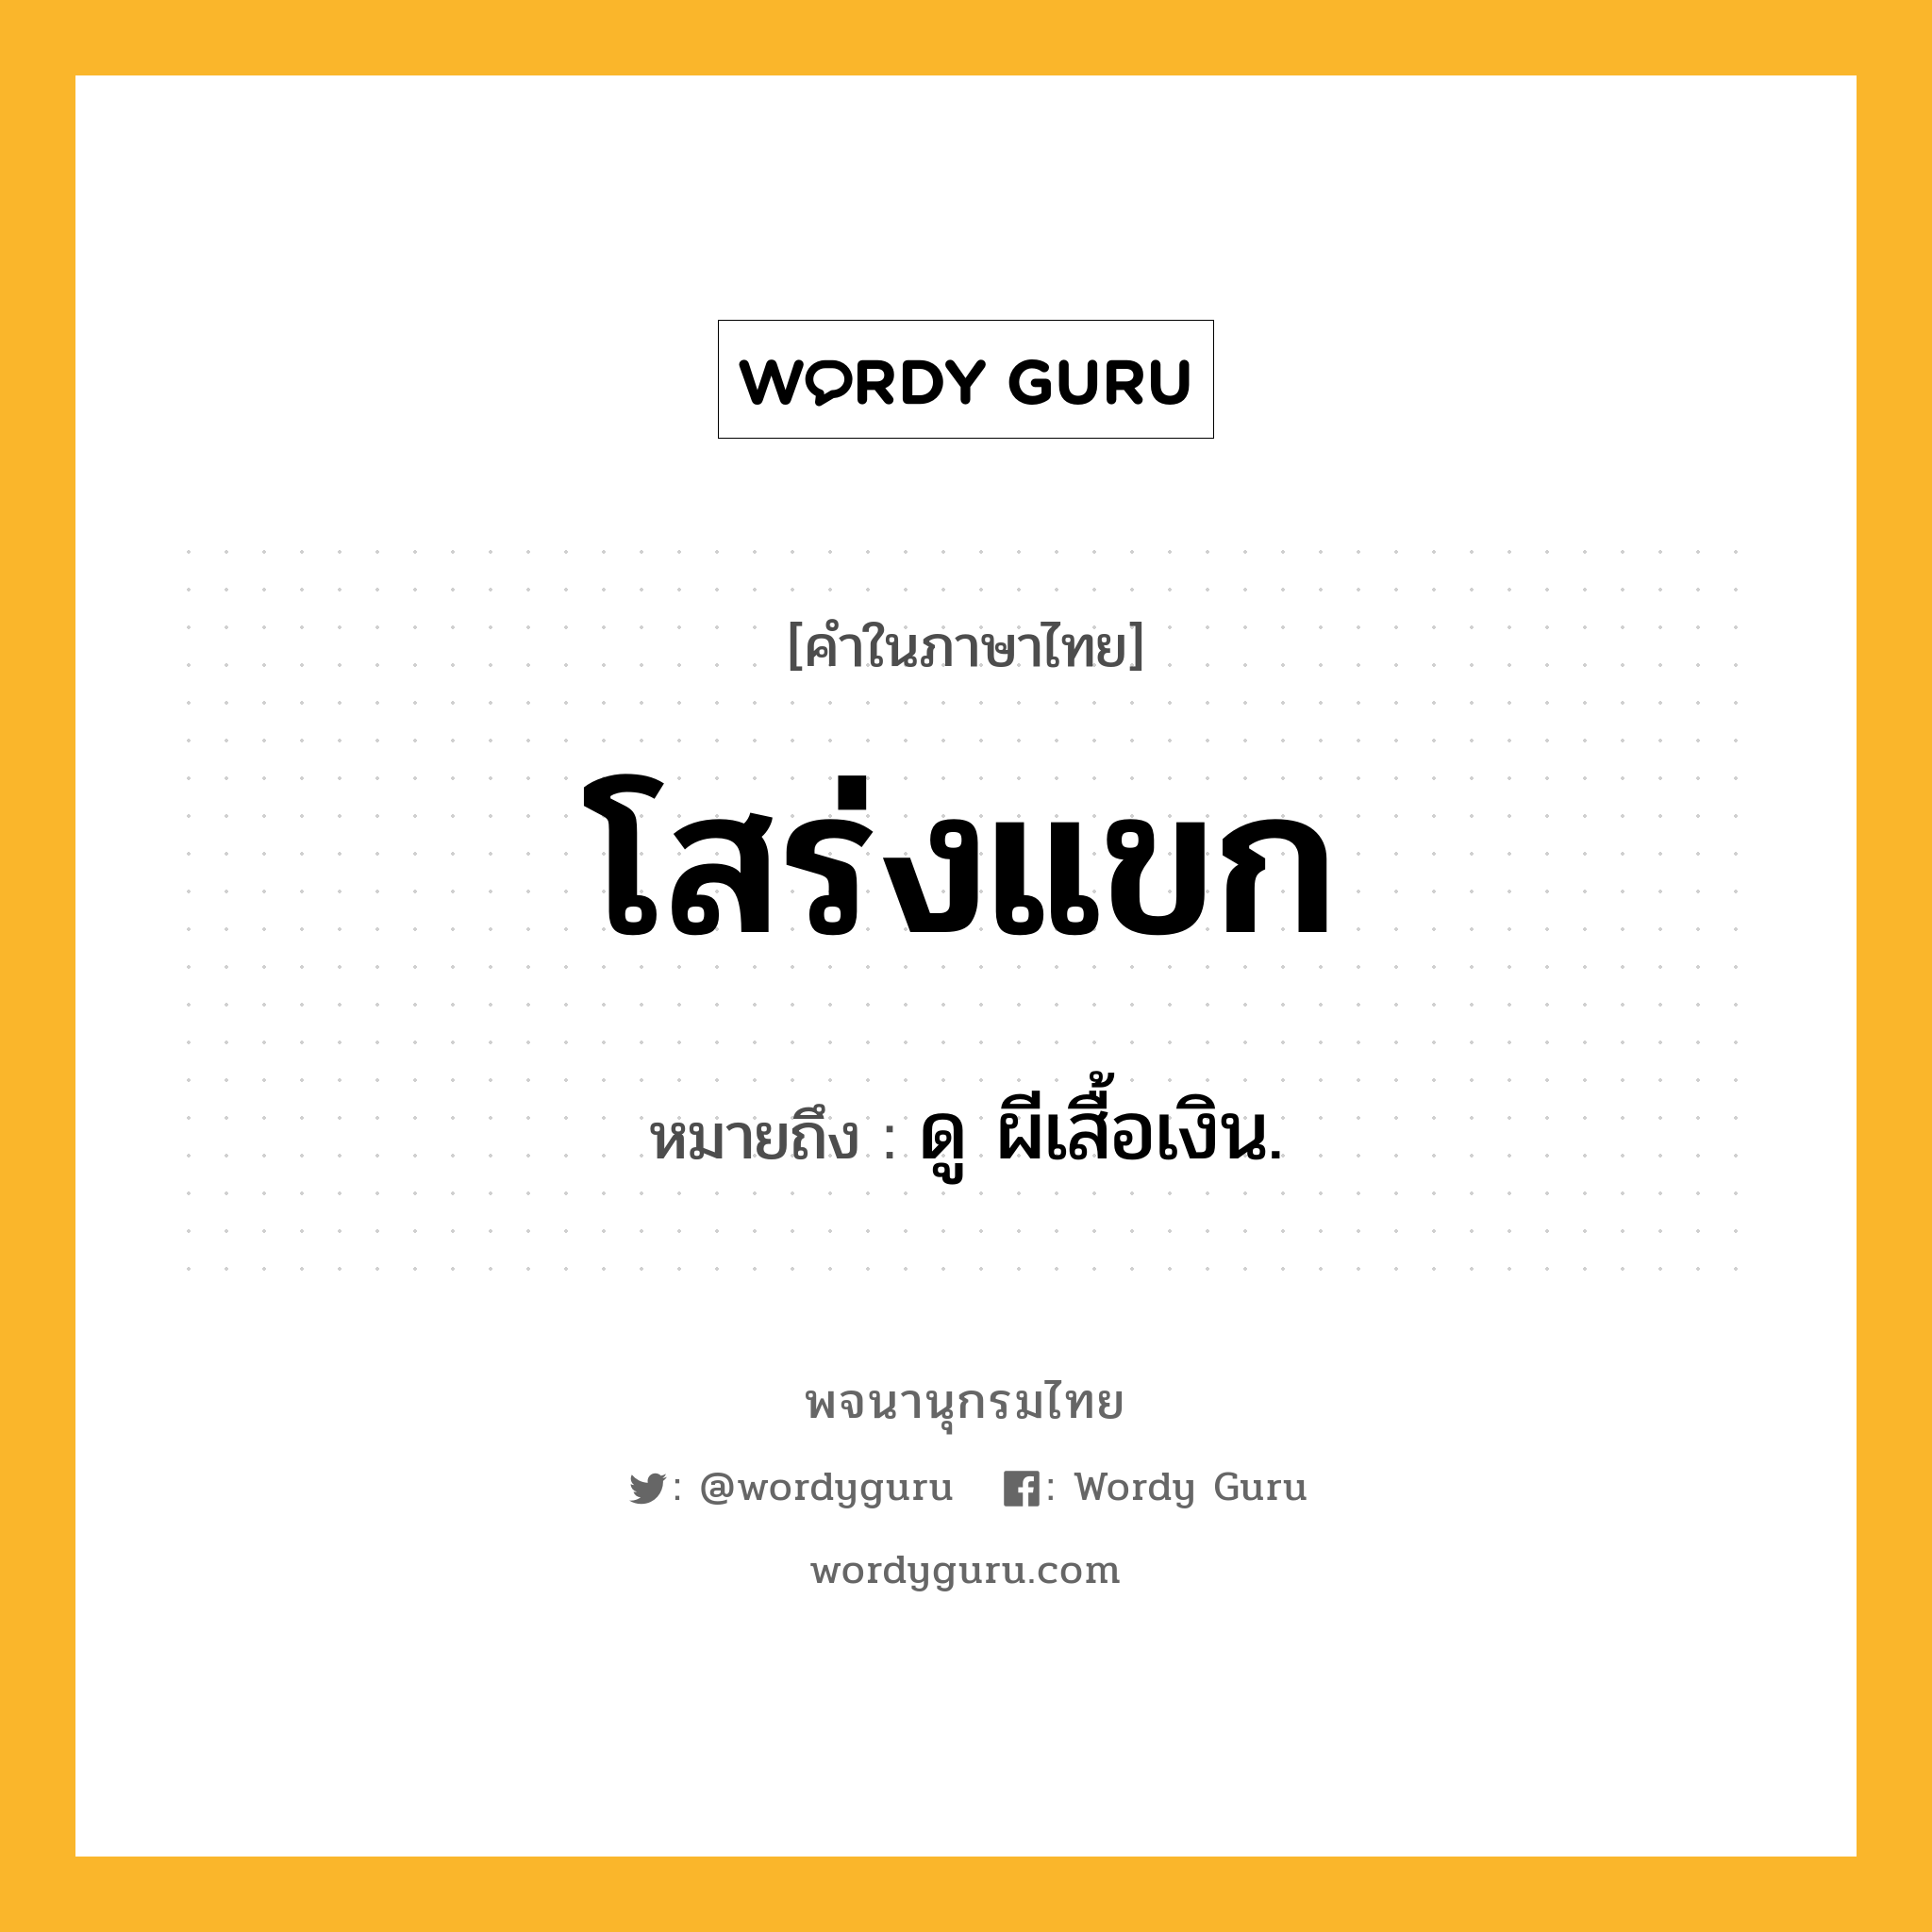 โสร่งแขก หมายถึงอะไร?, คำในภาษาไทย โสร่งแขก หมายถึง ดู ผีเสื้อเงิน.